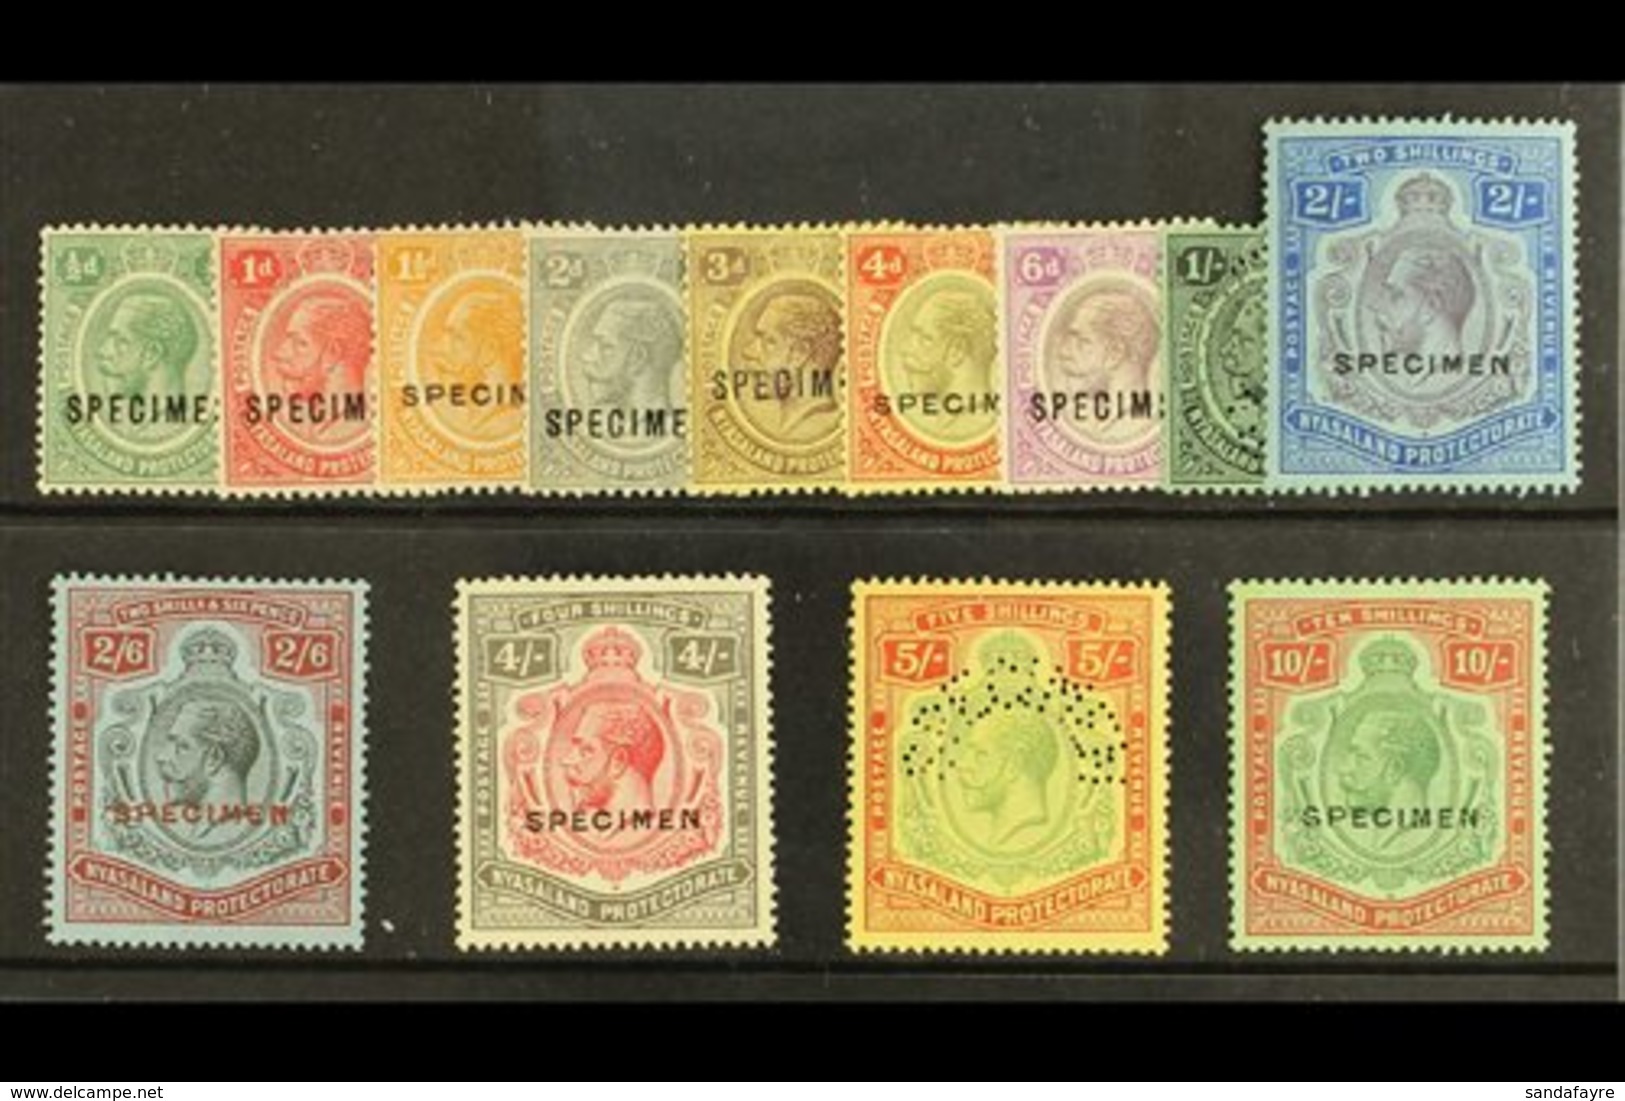 1921 Geo V Complete Set To 10s, Wmk Script CA, Overprinted "Specimen", SG 100/13, Very Fine Mint. (13 Stamps) For More I - Nyassaland (1907-1953)